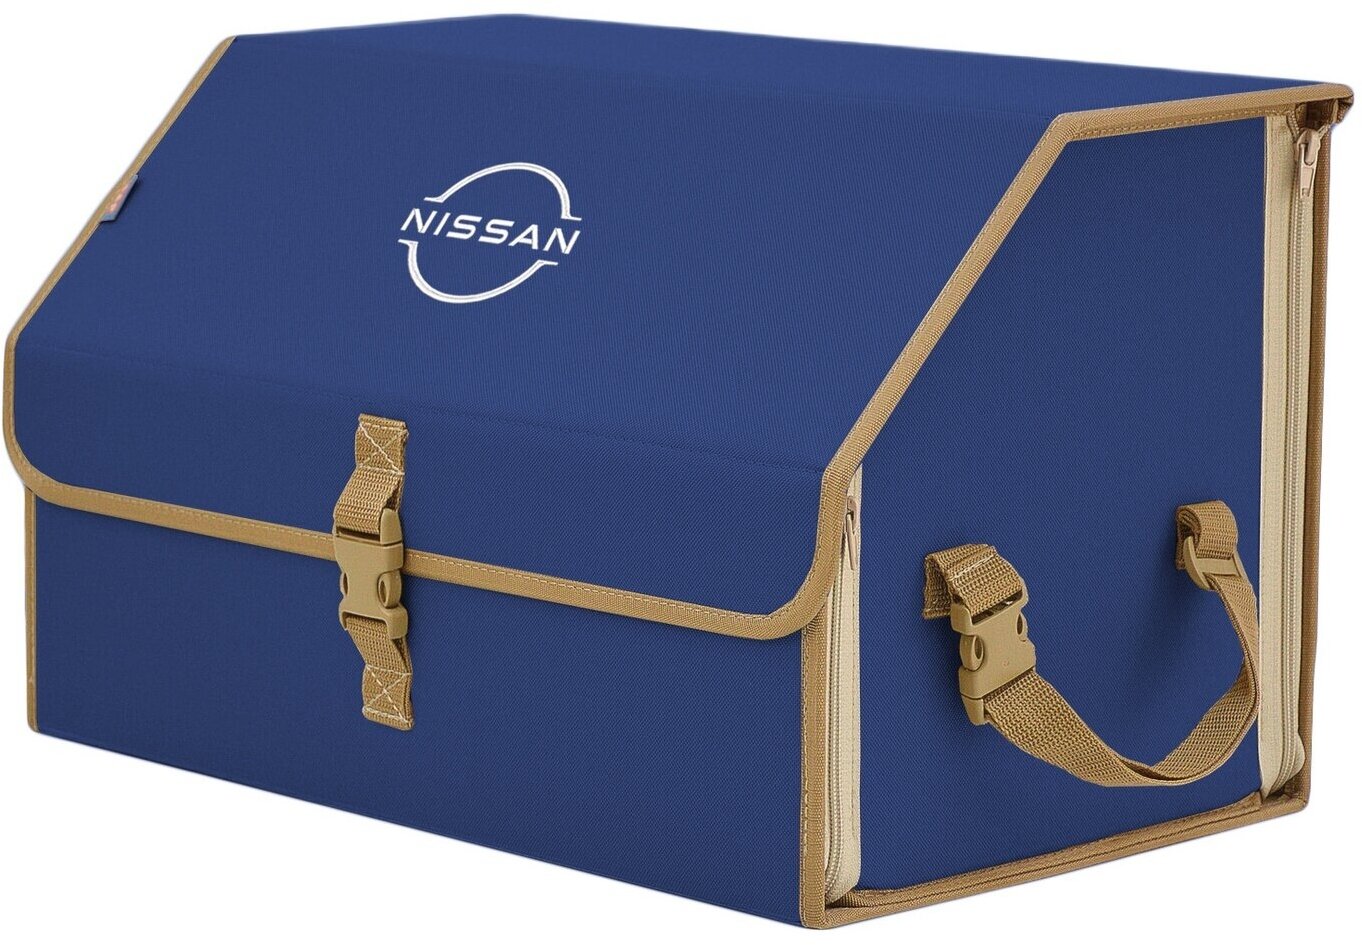 Органайзер-саквояж в багажник "Союз" (размер L). Цвет: синий с бежевой окантовкой и вышивкой Nissan (Ниссан).